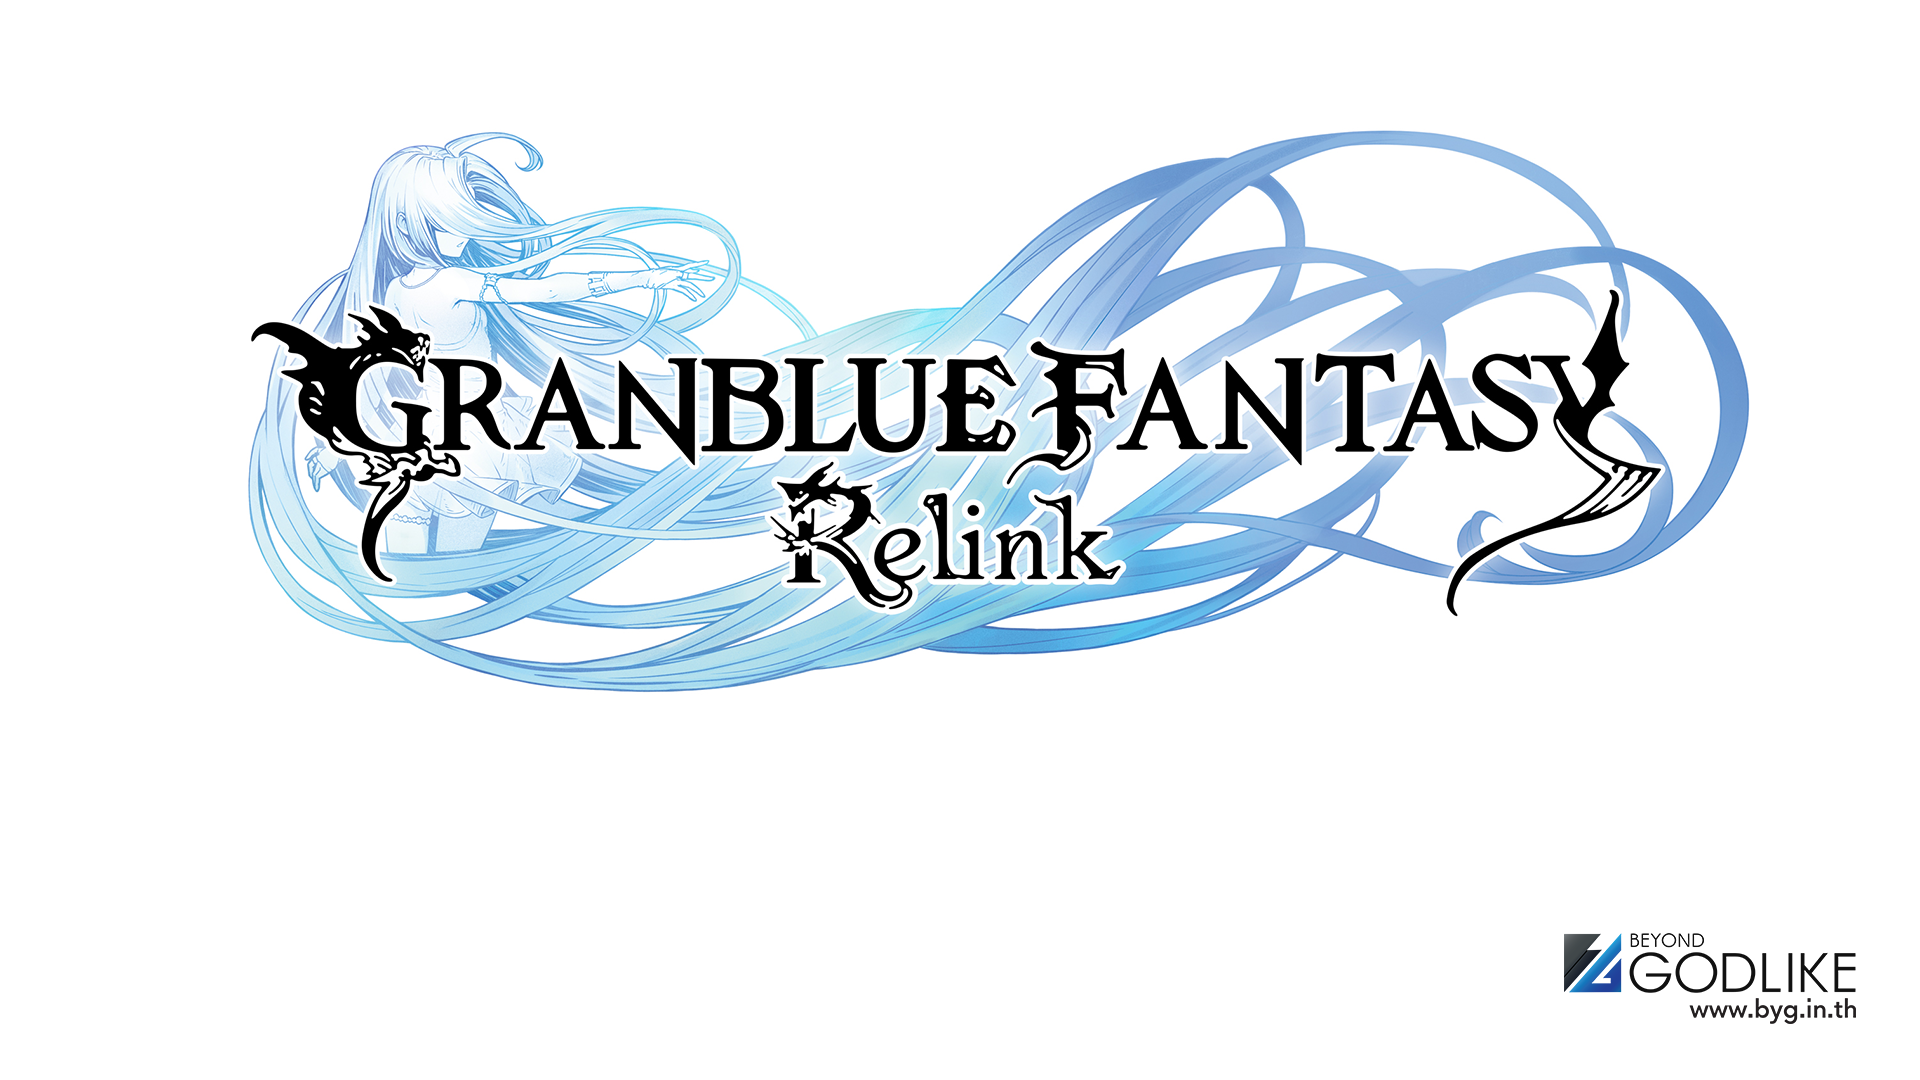 Granblue Fantasy: Relink การผจญภัยอันยิ่งใหญ่บนท้องฟ้ารอคุณอยู่! ข้อมูลตัวละครเริ่มต้นเกม